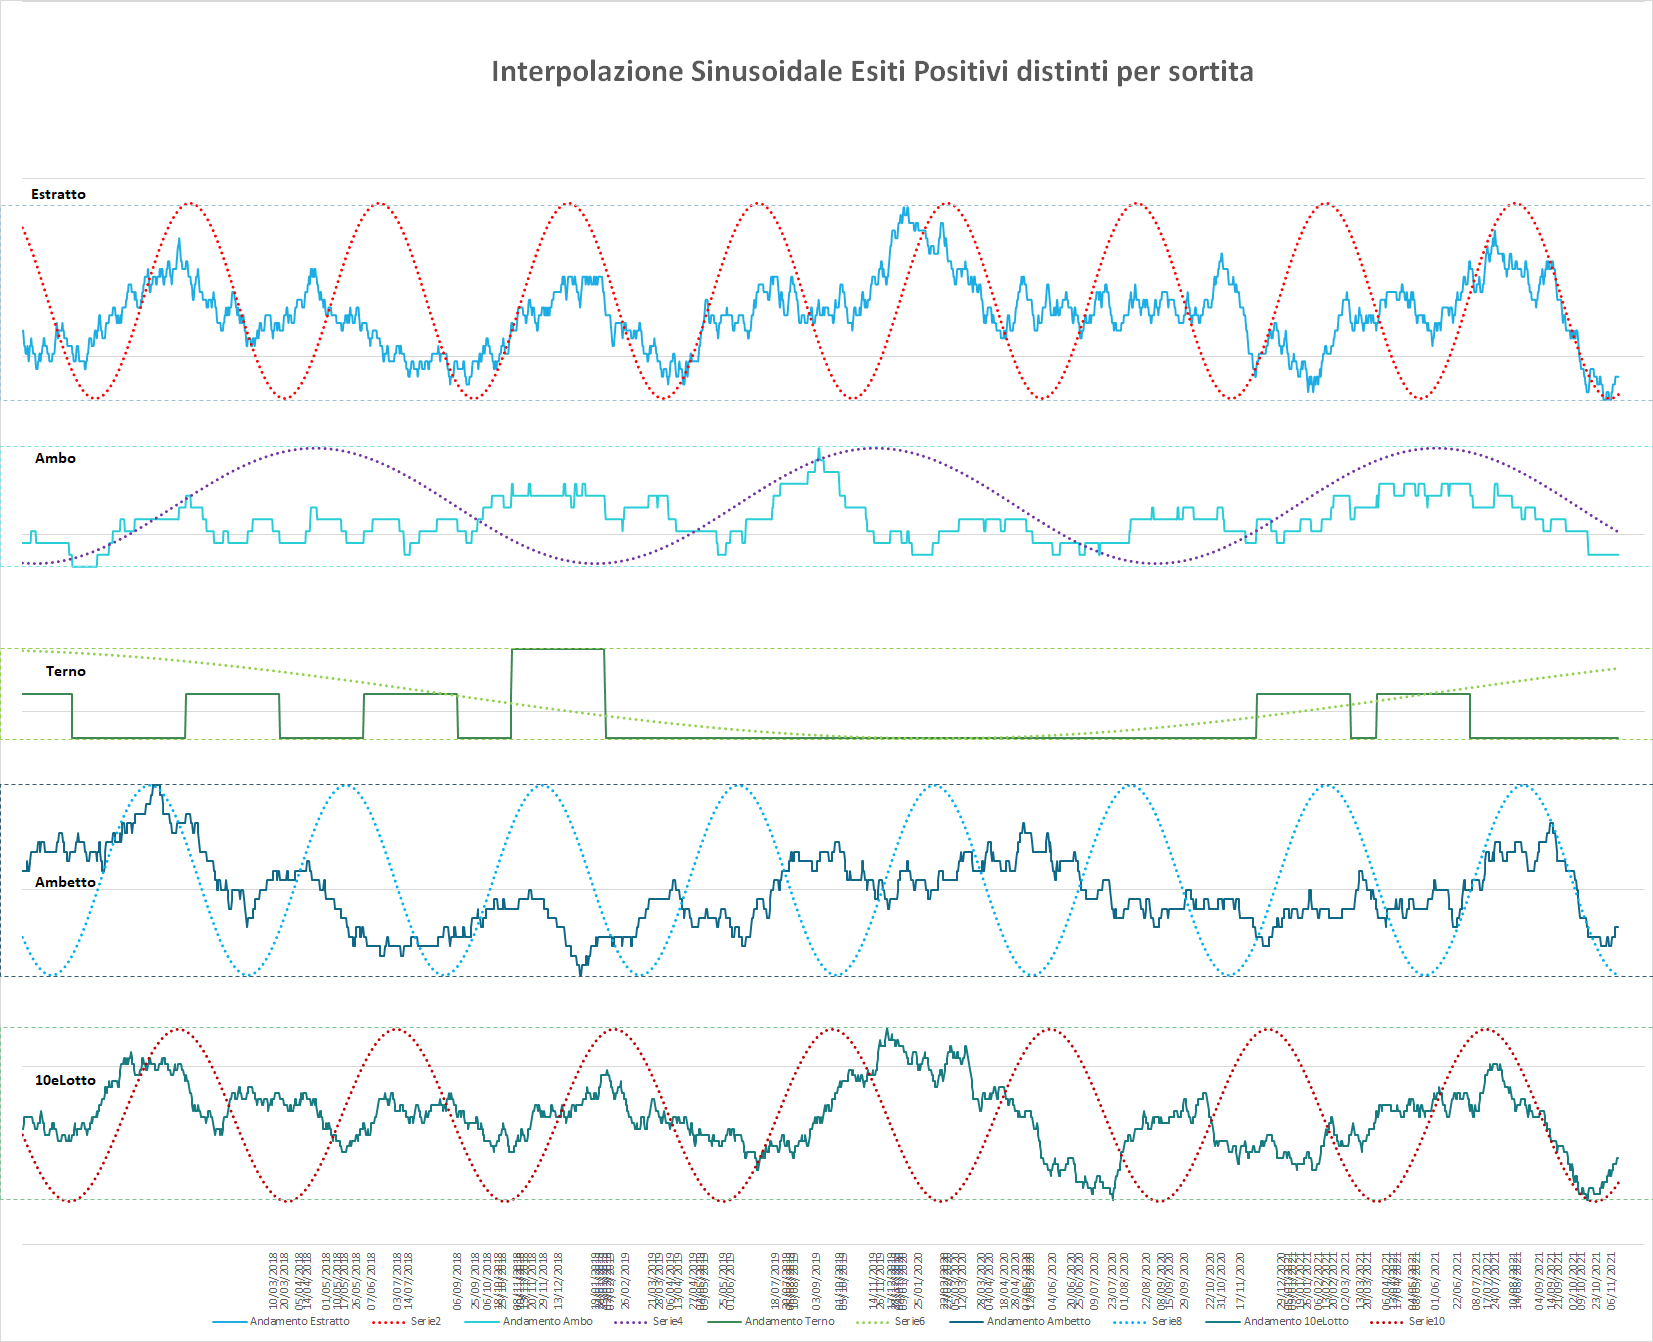 Ipotetico andamento sinusoidale interpolante per le medie delle varie sortite - Aggiornato all'estrazione precedente il 13 Novembre 2021